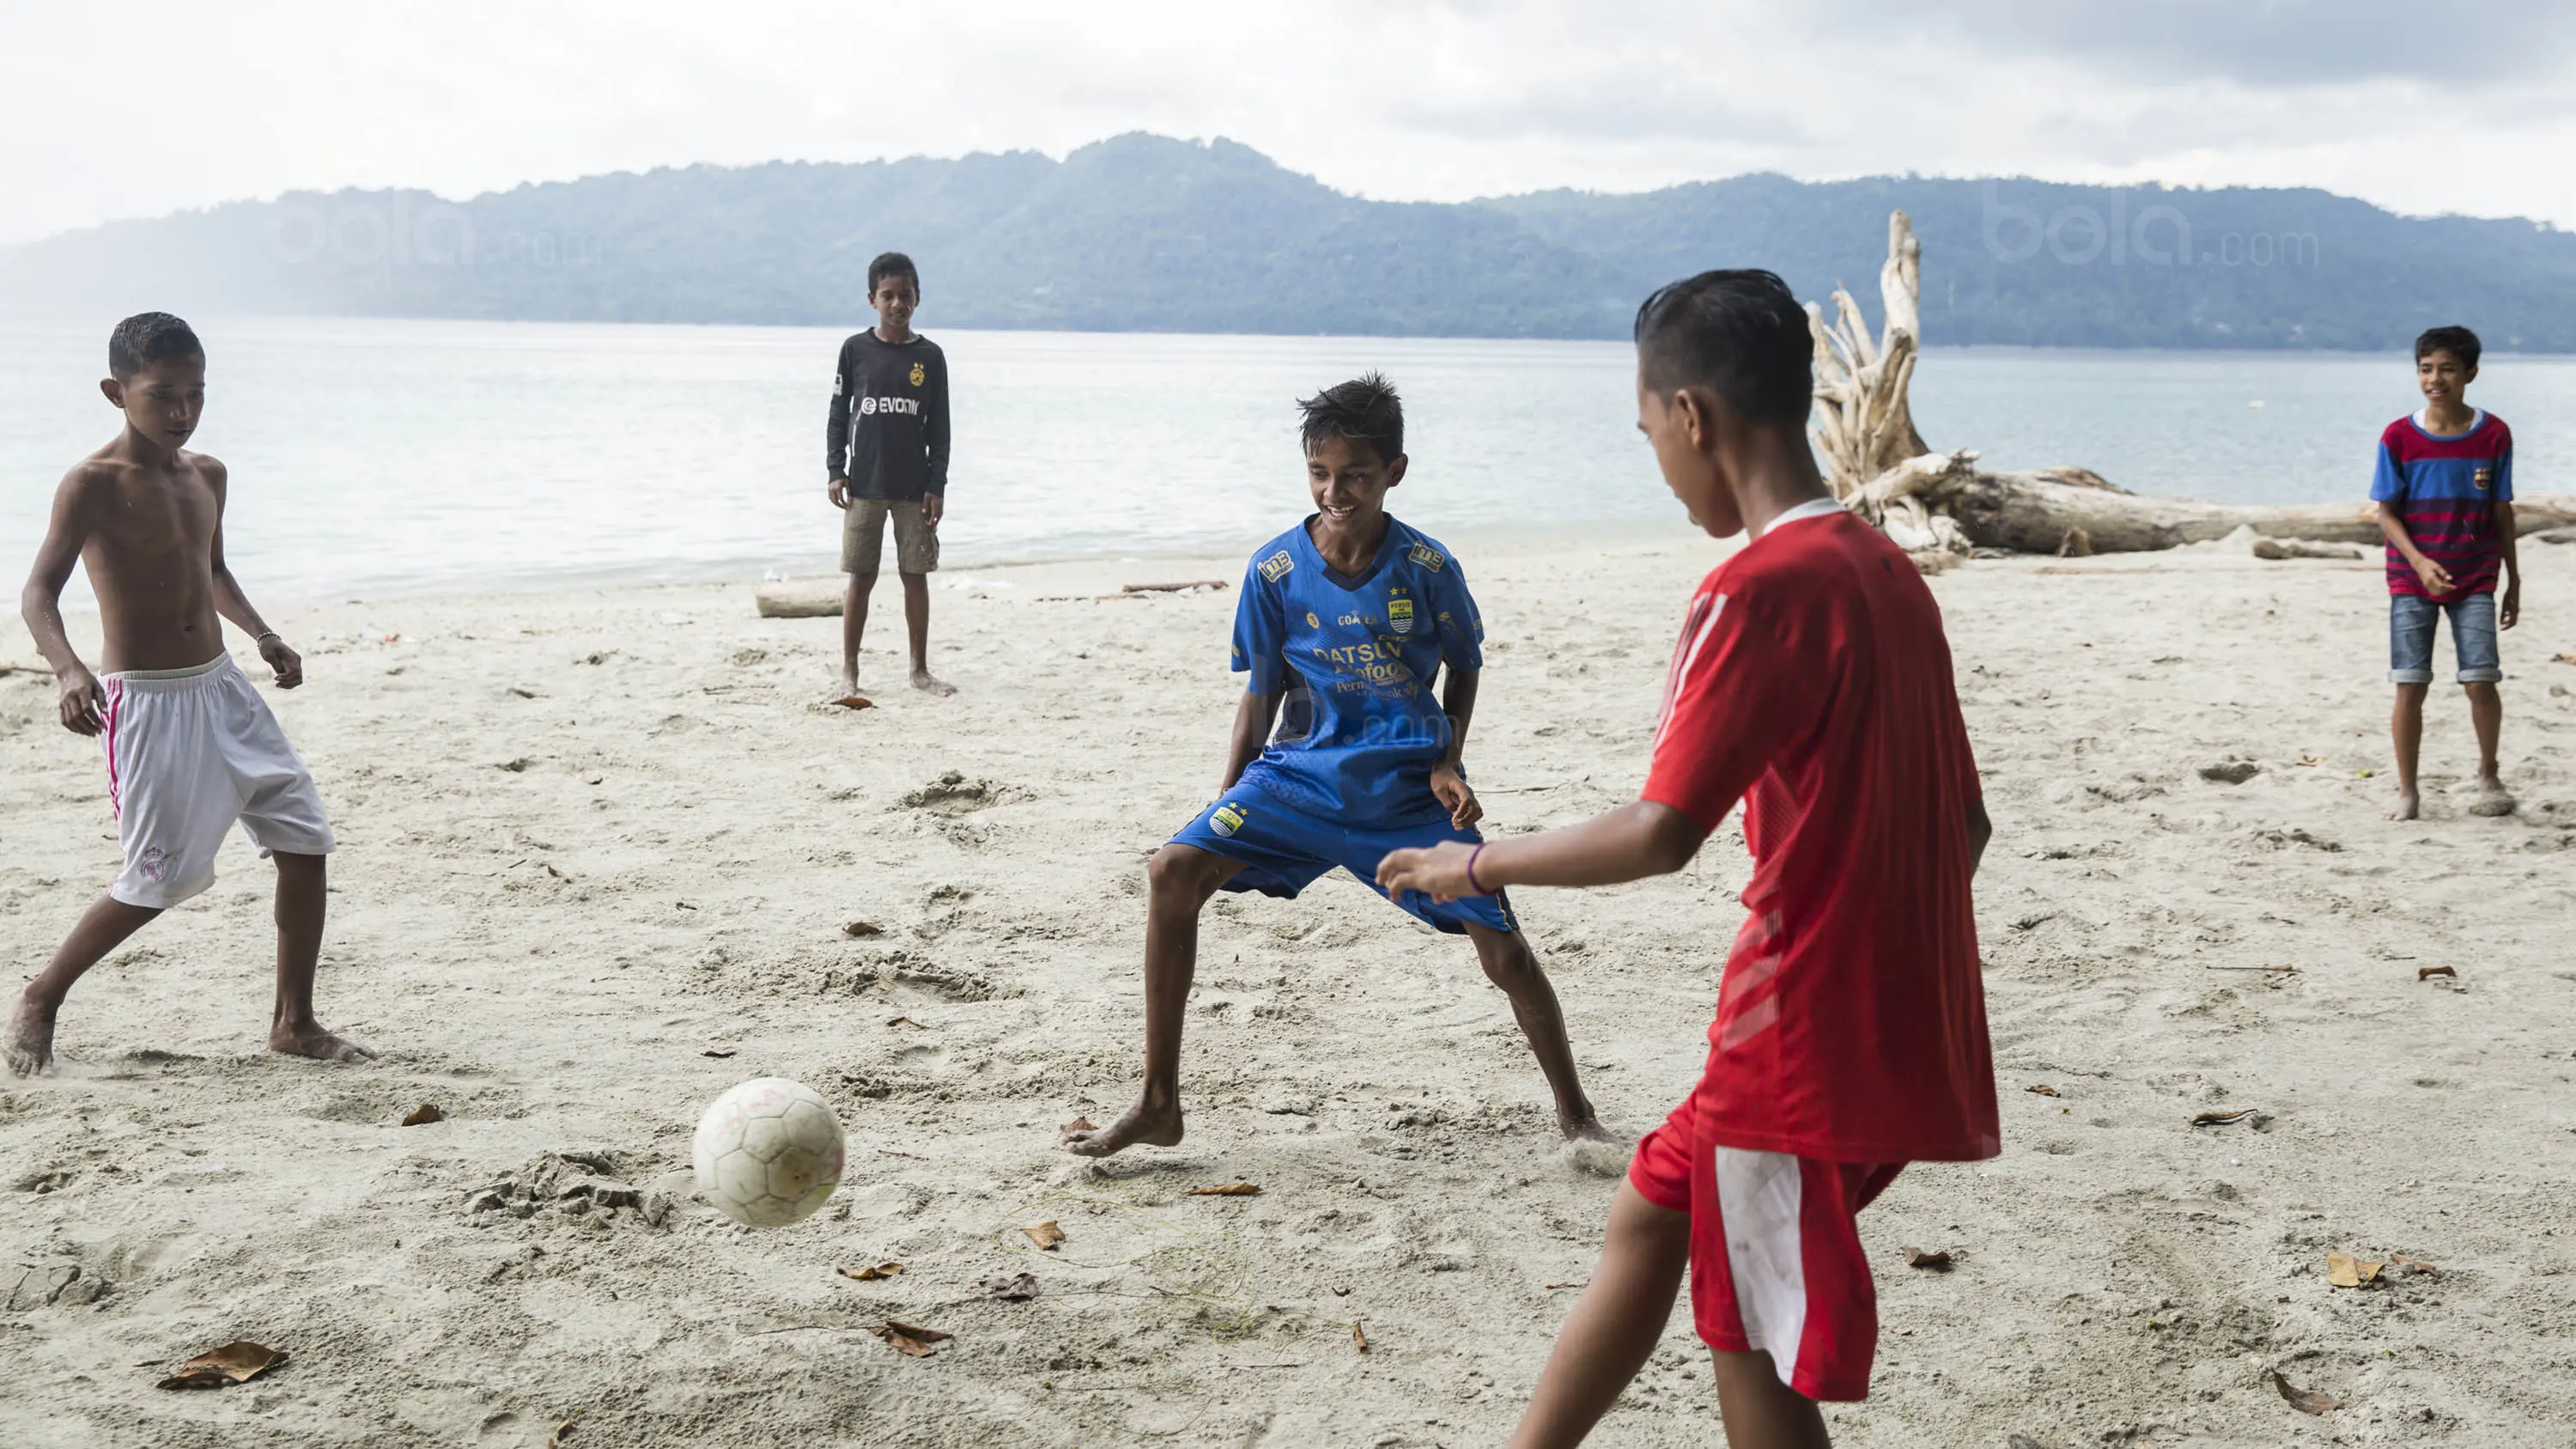 Menjadi pesepak bola merupakan cita-cita dari sebagian besar anak-anak di Desa Tulehu. Dengan bermain sepak bola mereka berharap bisa merubah kehidupan keluarga mereka yang sebagian besar masih kurang layak. (Bola.com/Vitalis Yogi Trisna)